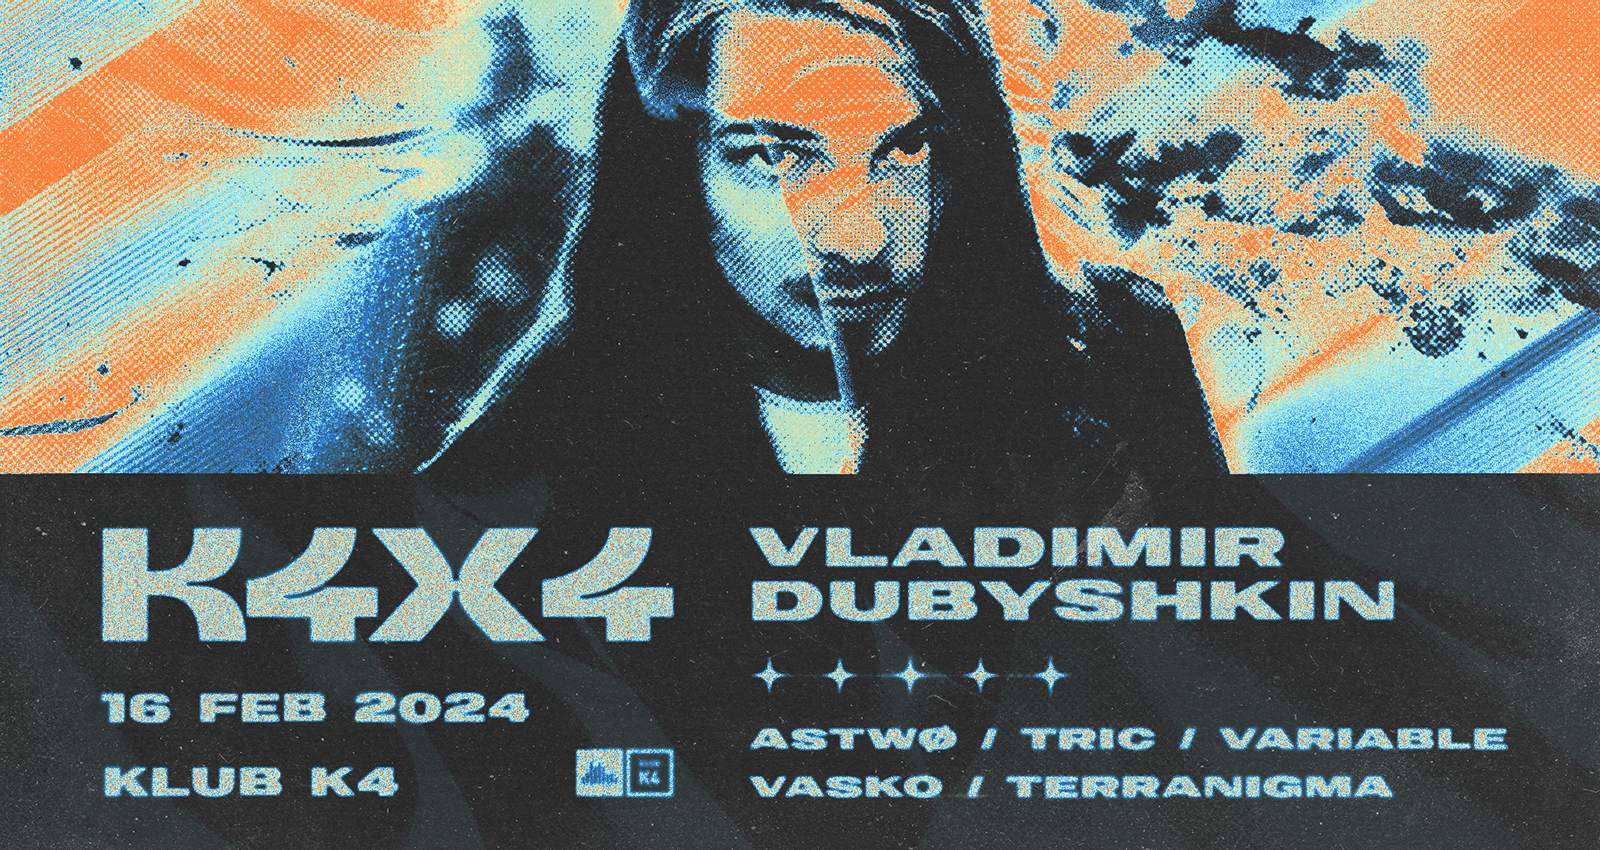 K4x4 with Vladimir Dubyshkin - フライヤー表